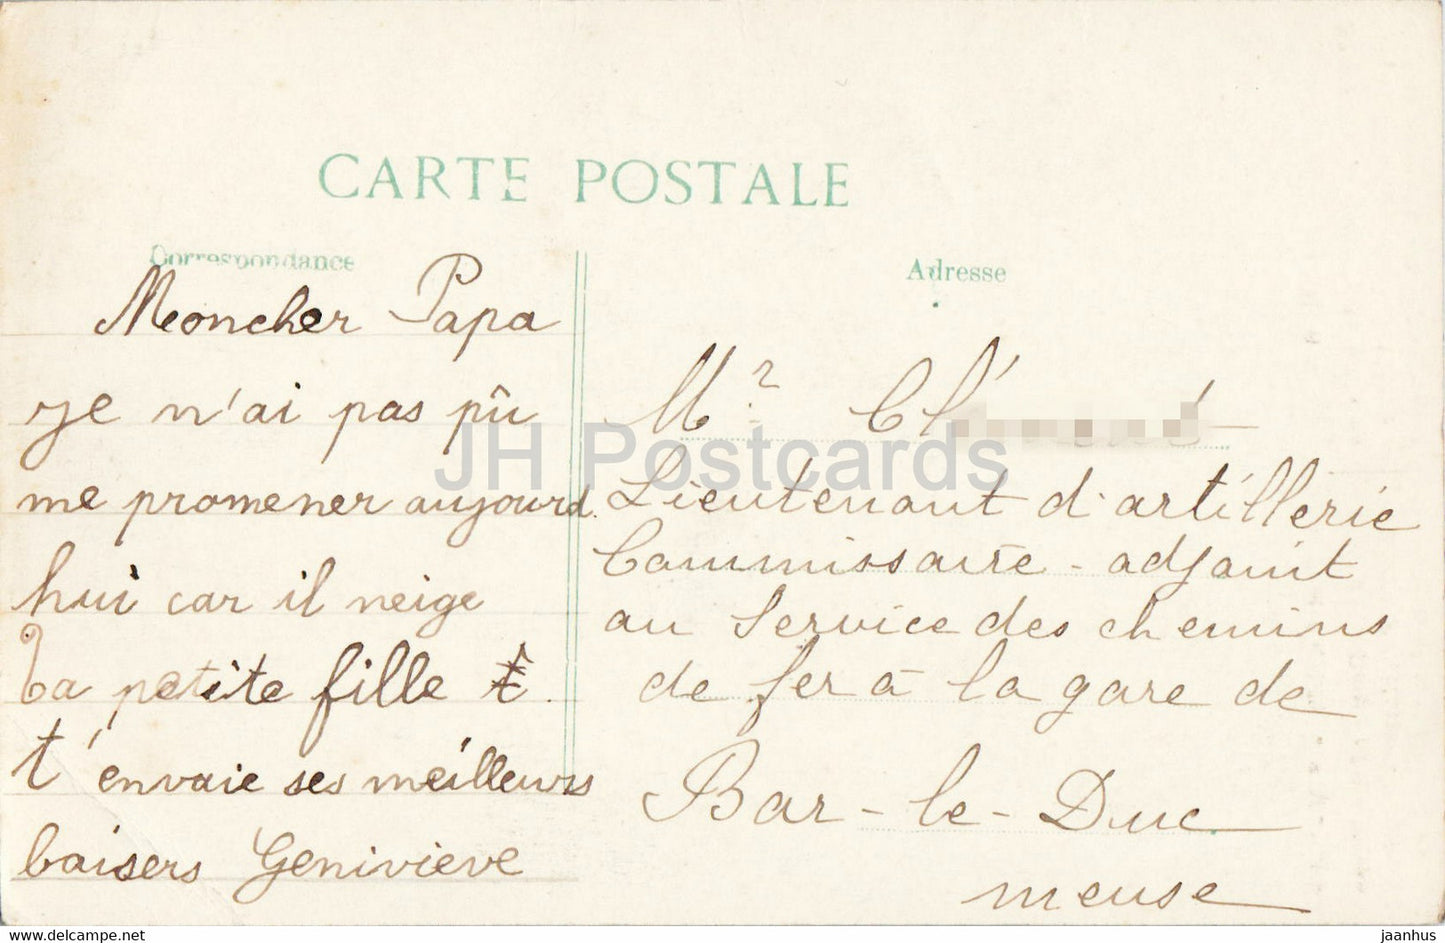 Maurupt - Interieur de l'eglise apres le bombardement - Bataille de la Marne 1914 - 37 - alte Postkarte - Frankreich - gebraucht